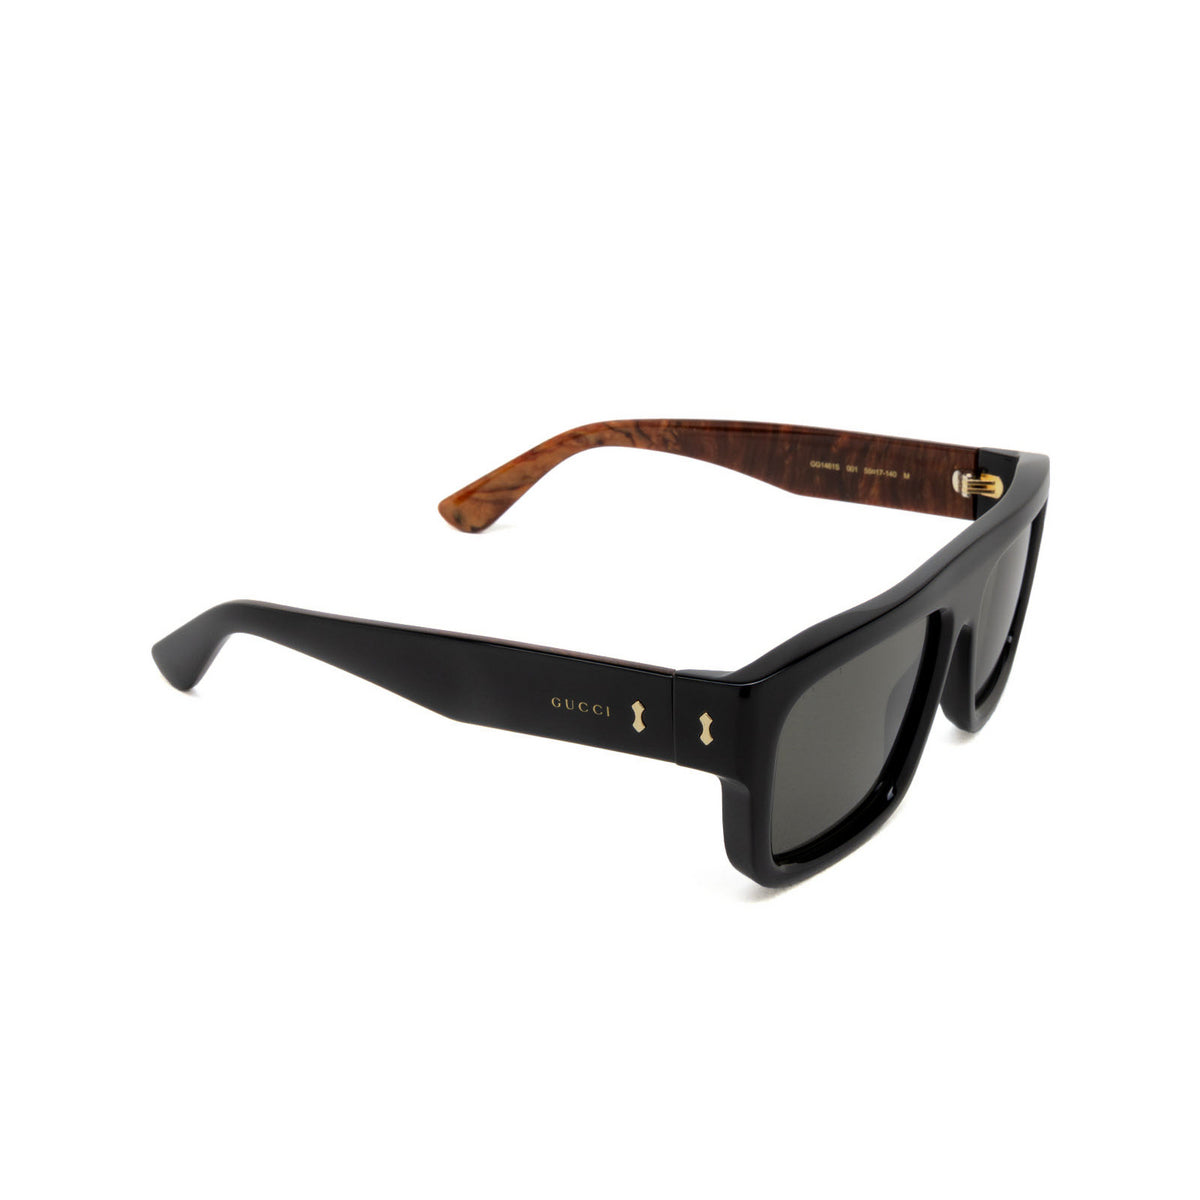 Gucci GG1461S-001 55mm New Sunglasses